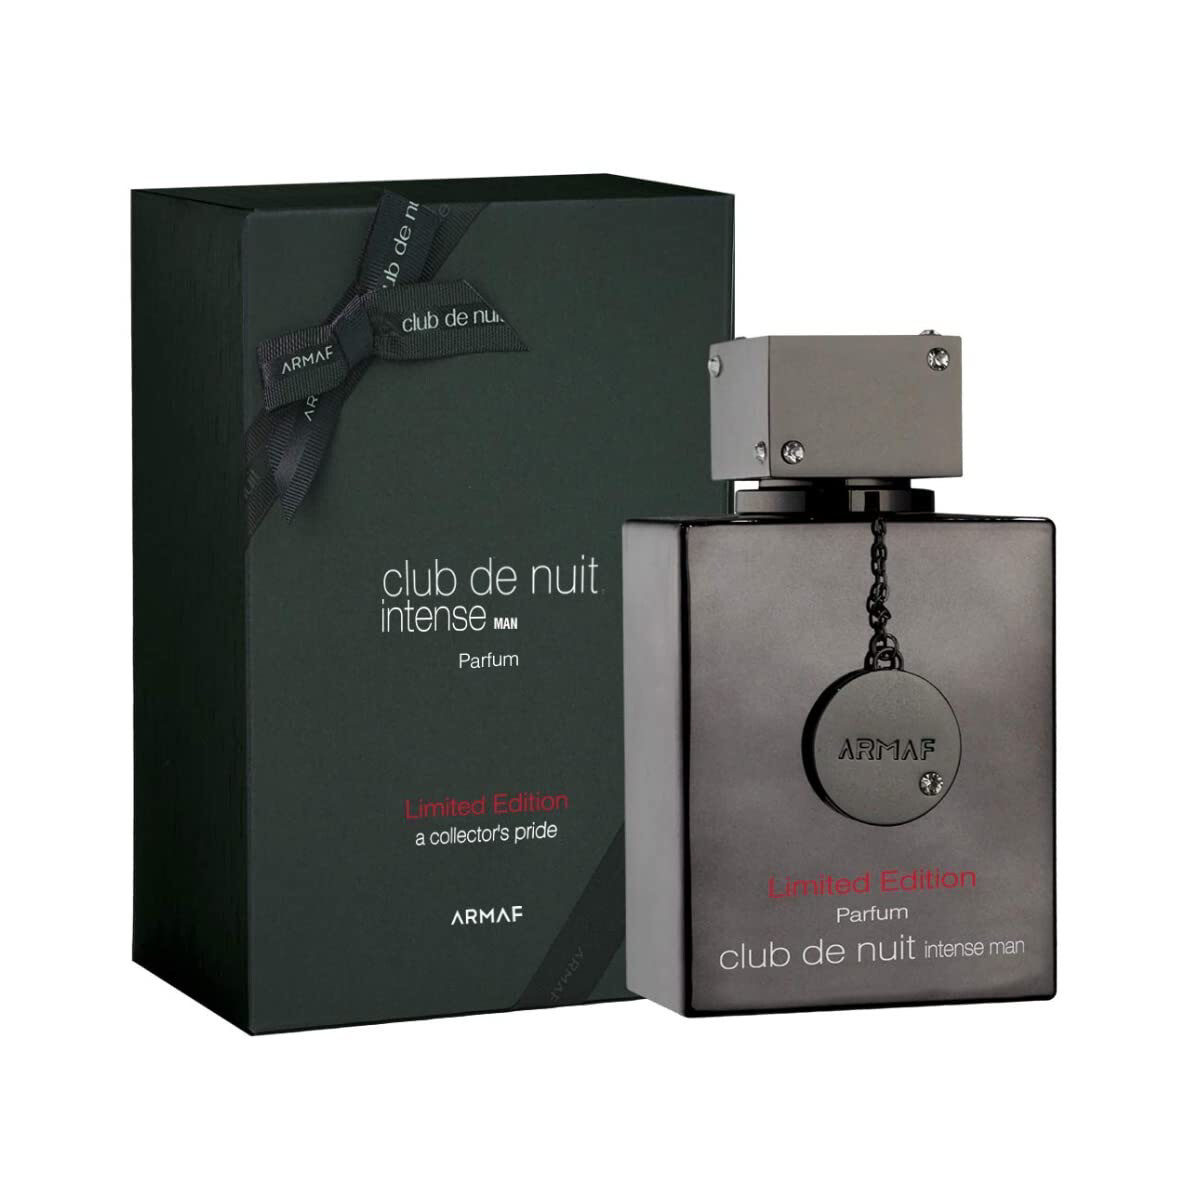 ARMAF Club De Nuit Intense Men Limited Edition Pure Parfum 3.6 Fl Oz